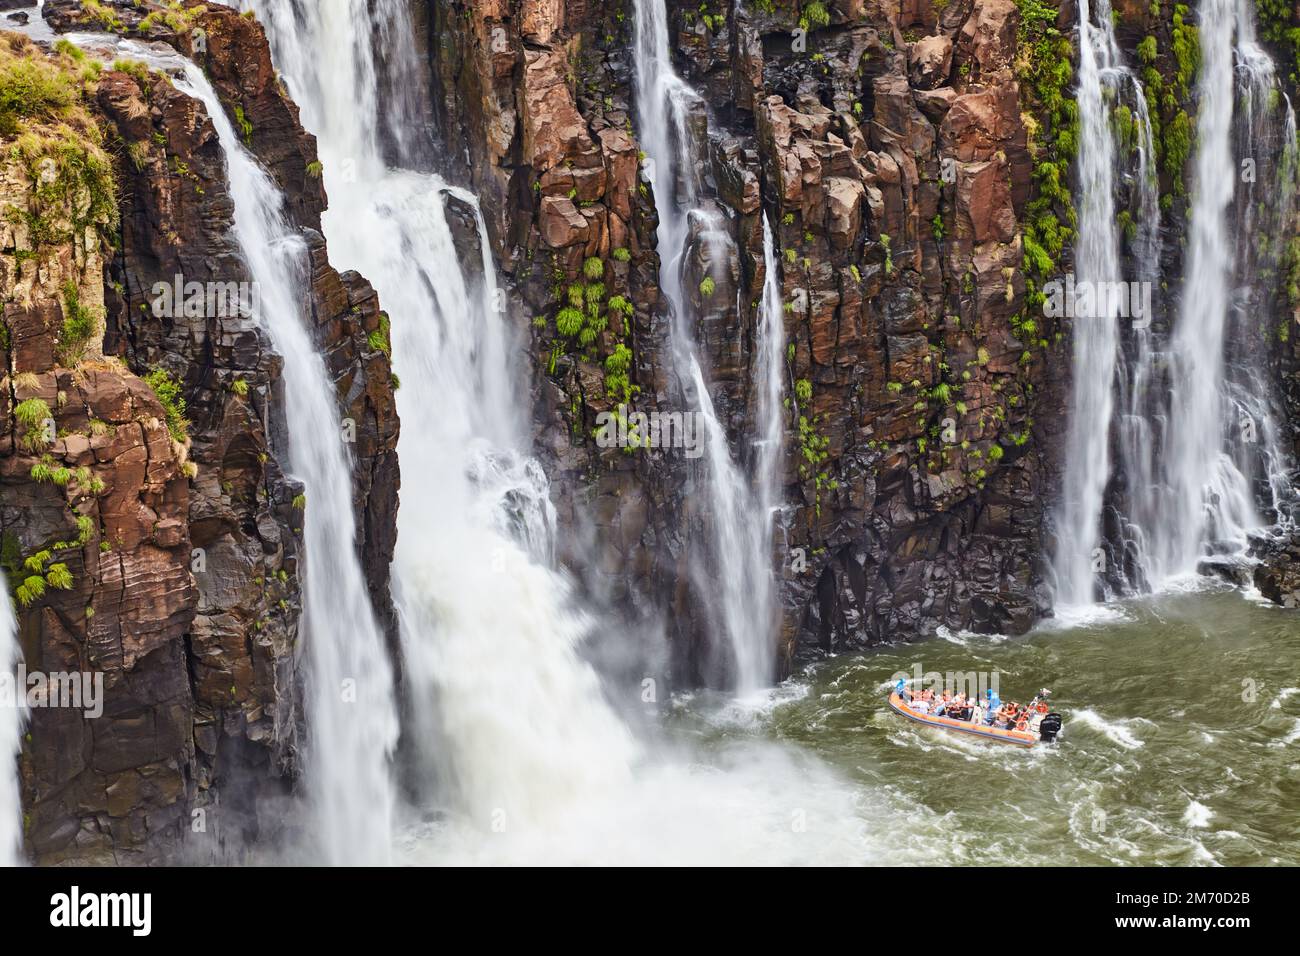 Popolare attività di avventura turistica alle Cascate di Iguazu, il motoscafo si avvicina al torrente d'acqua, vista dal lato brasiliano Foto Stock